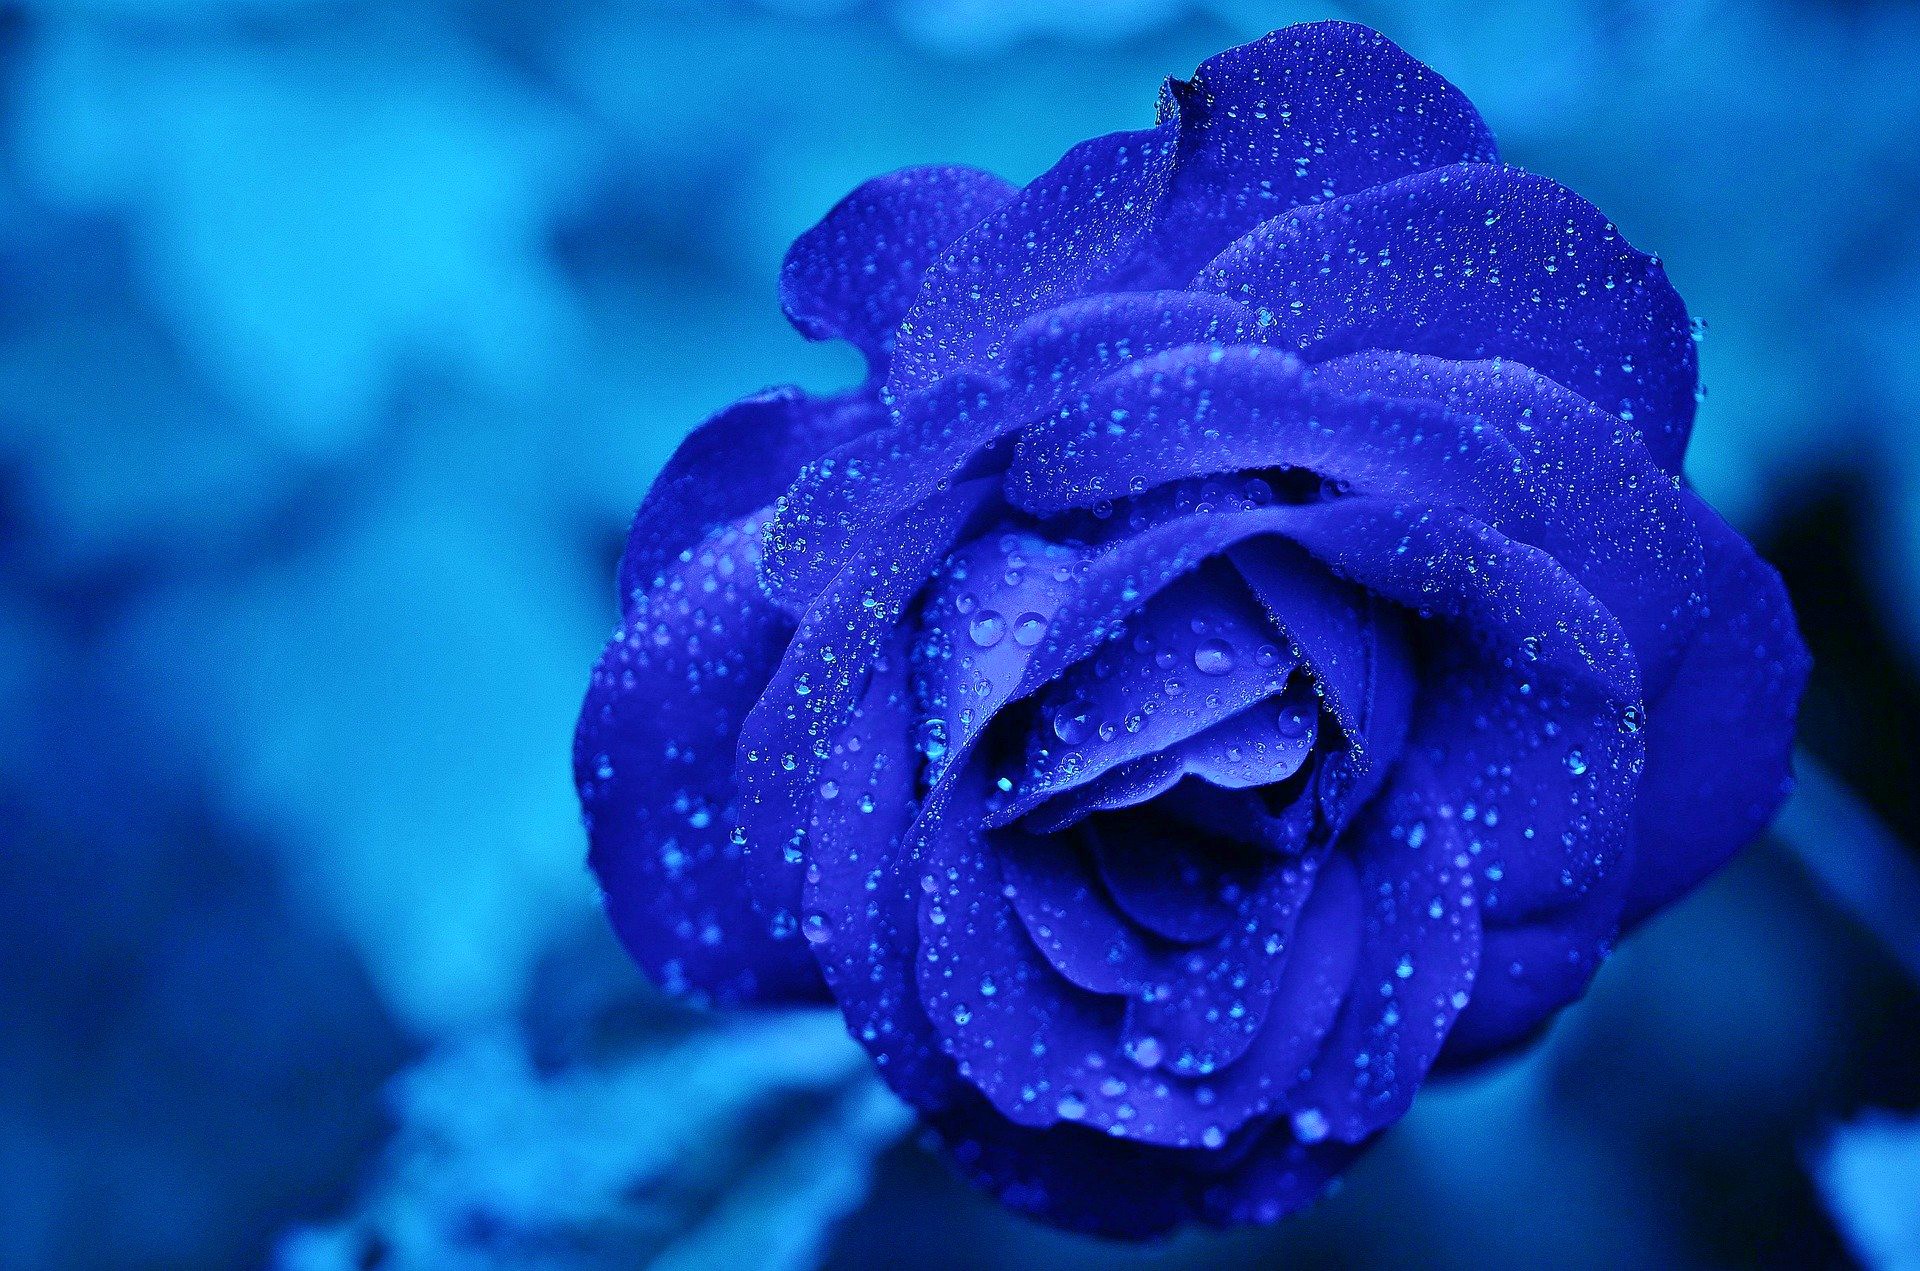 <img src="blue rose.jpg" alt="blue rose against blue background"/> 